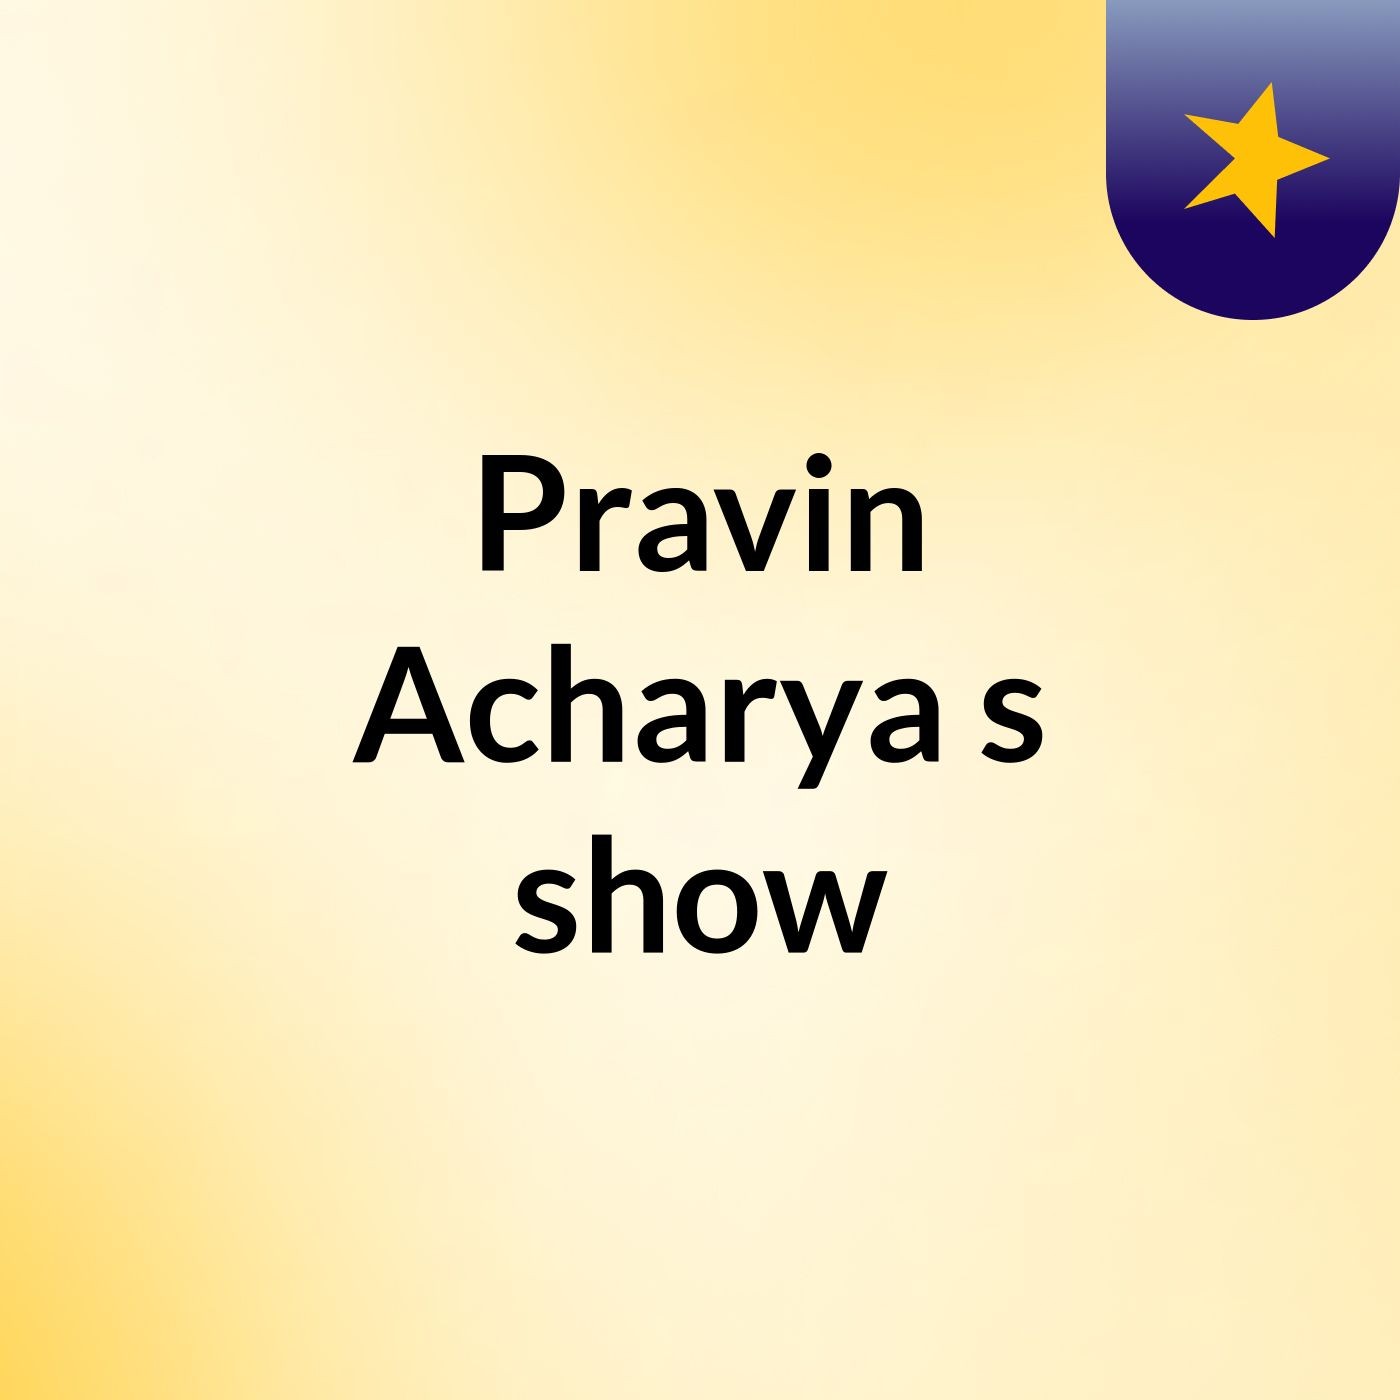 Pravin Acharya's show